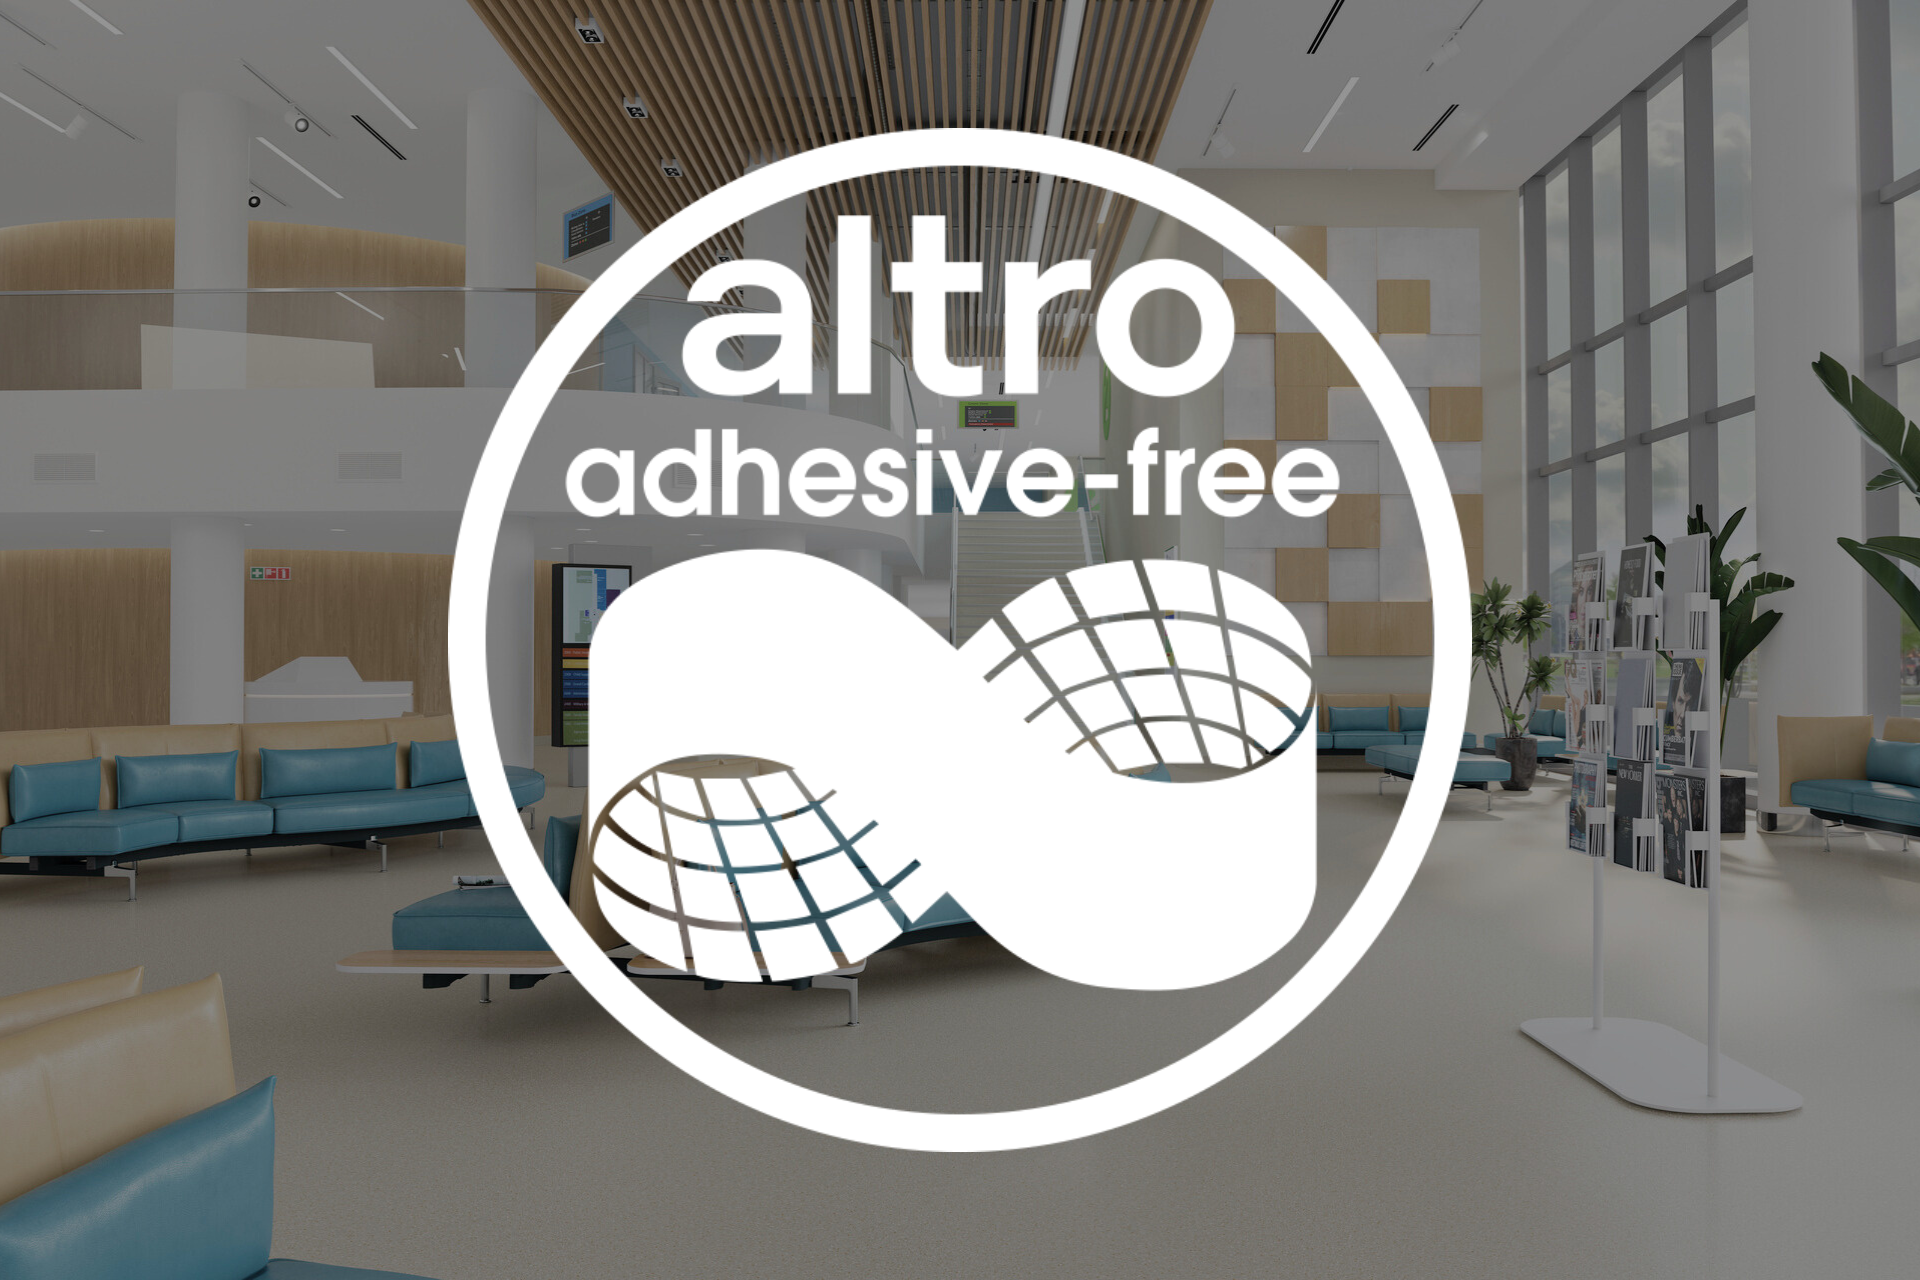 Adhesive-free floors